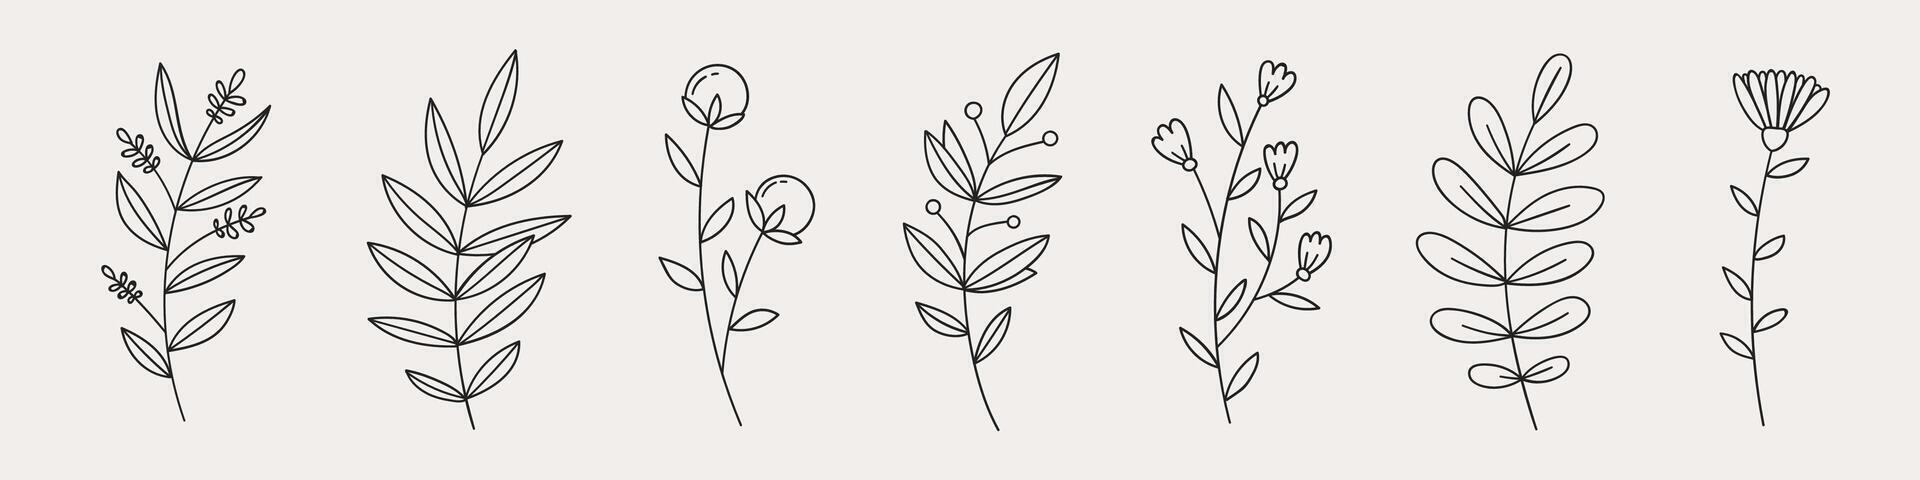 mano dibujado flor garabatos mano dibujado bosquejo de primavera flor planta. vector sencillo flor.